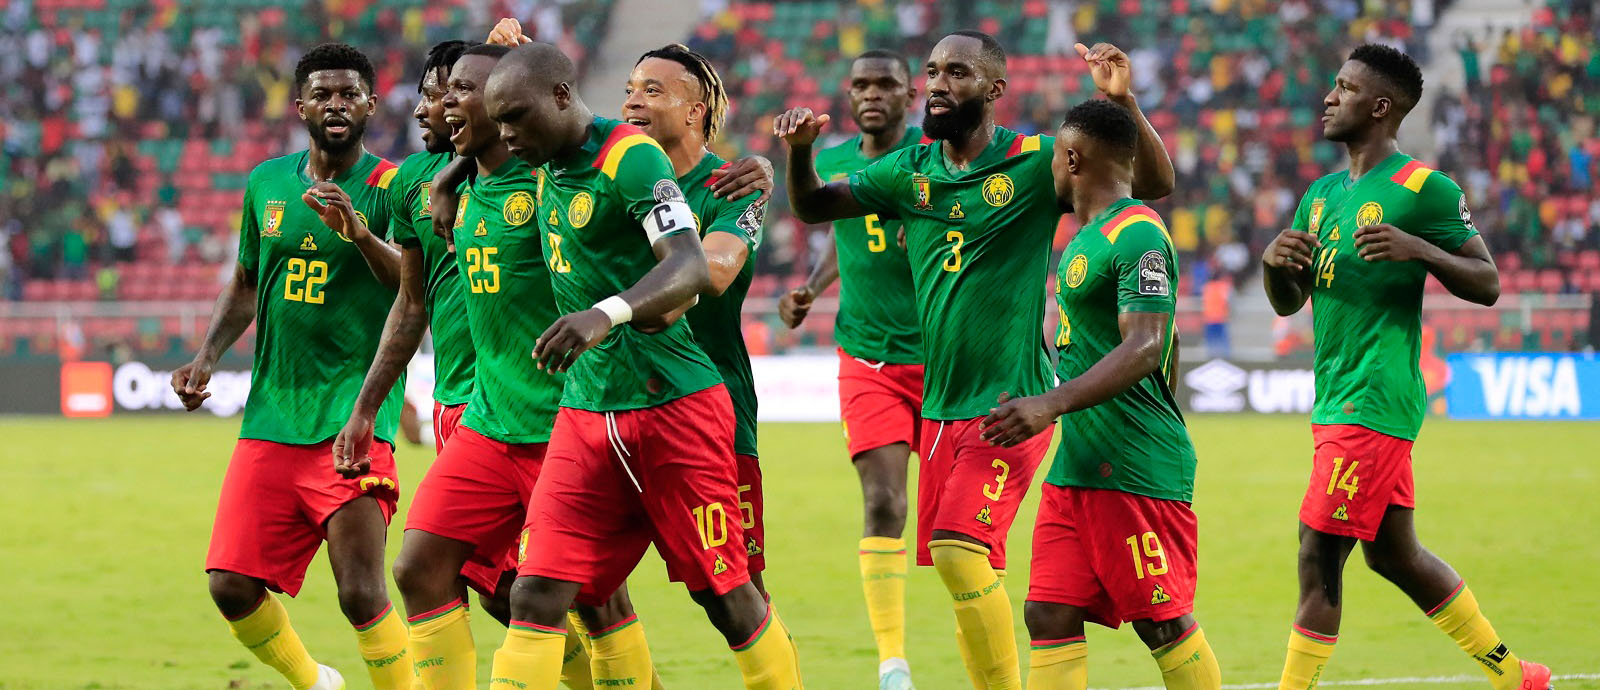 منتخب الكاميرون يعلن قائمته المشاركة في كأس العالم 2022 - مونديال قطر 2022  - الأخبار - قنوات الكأس